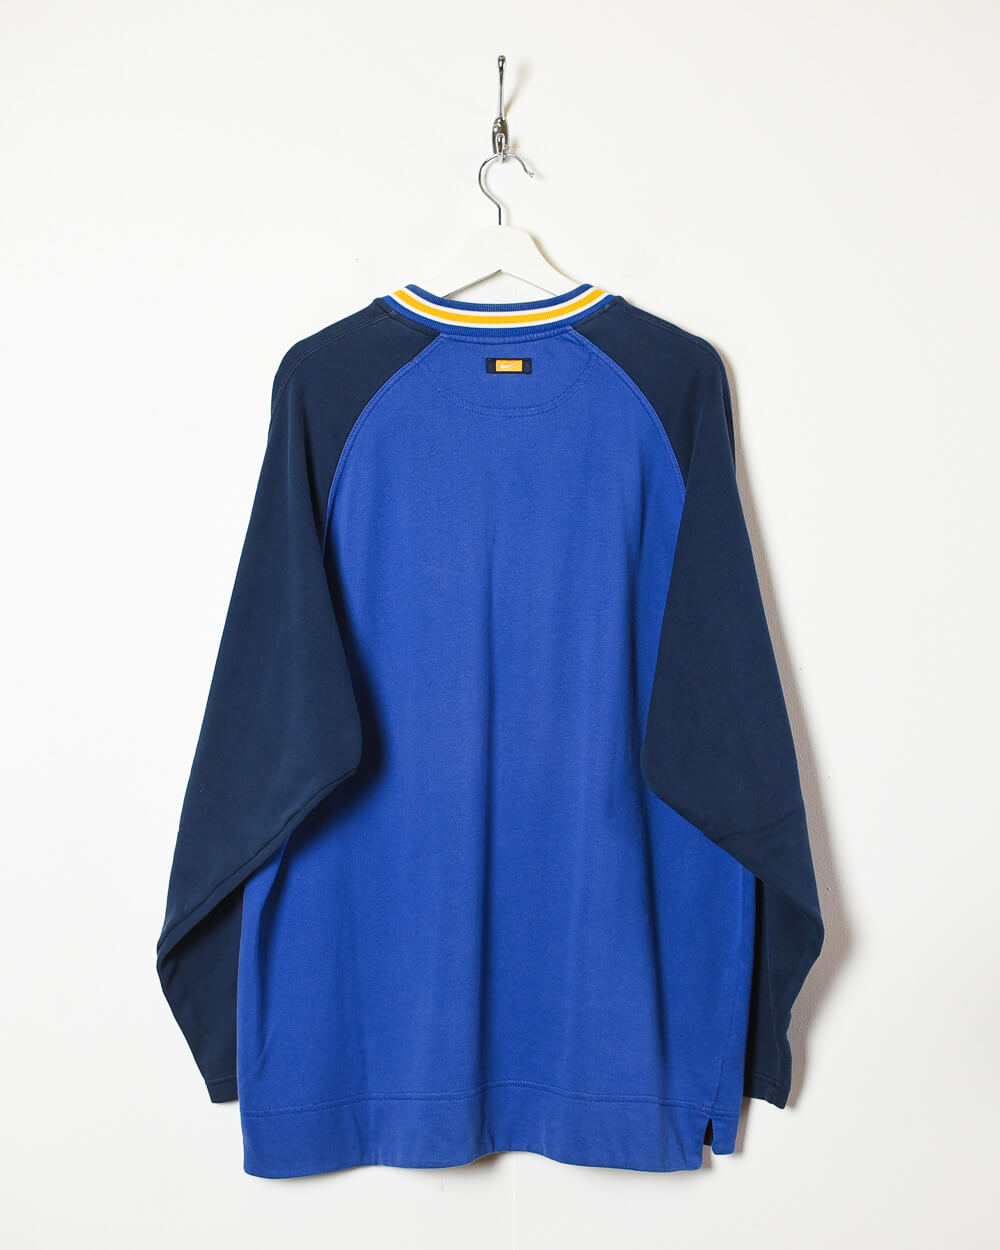 Blue Nike Sweatshirt - X-Large